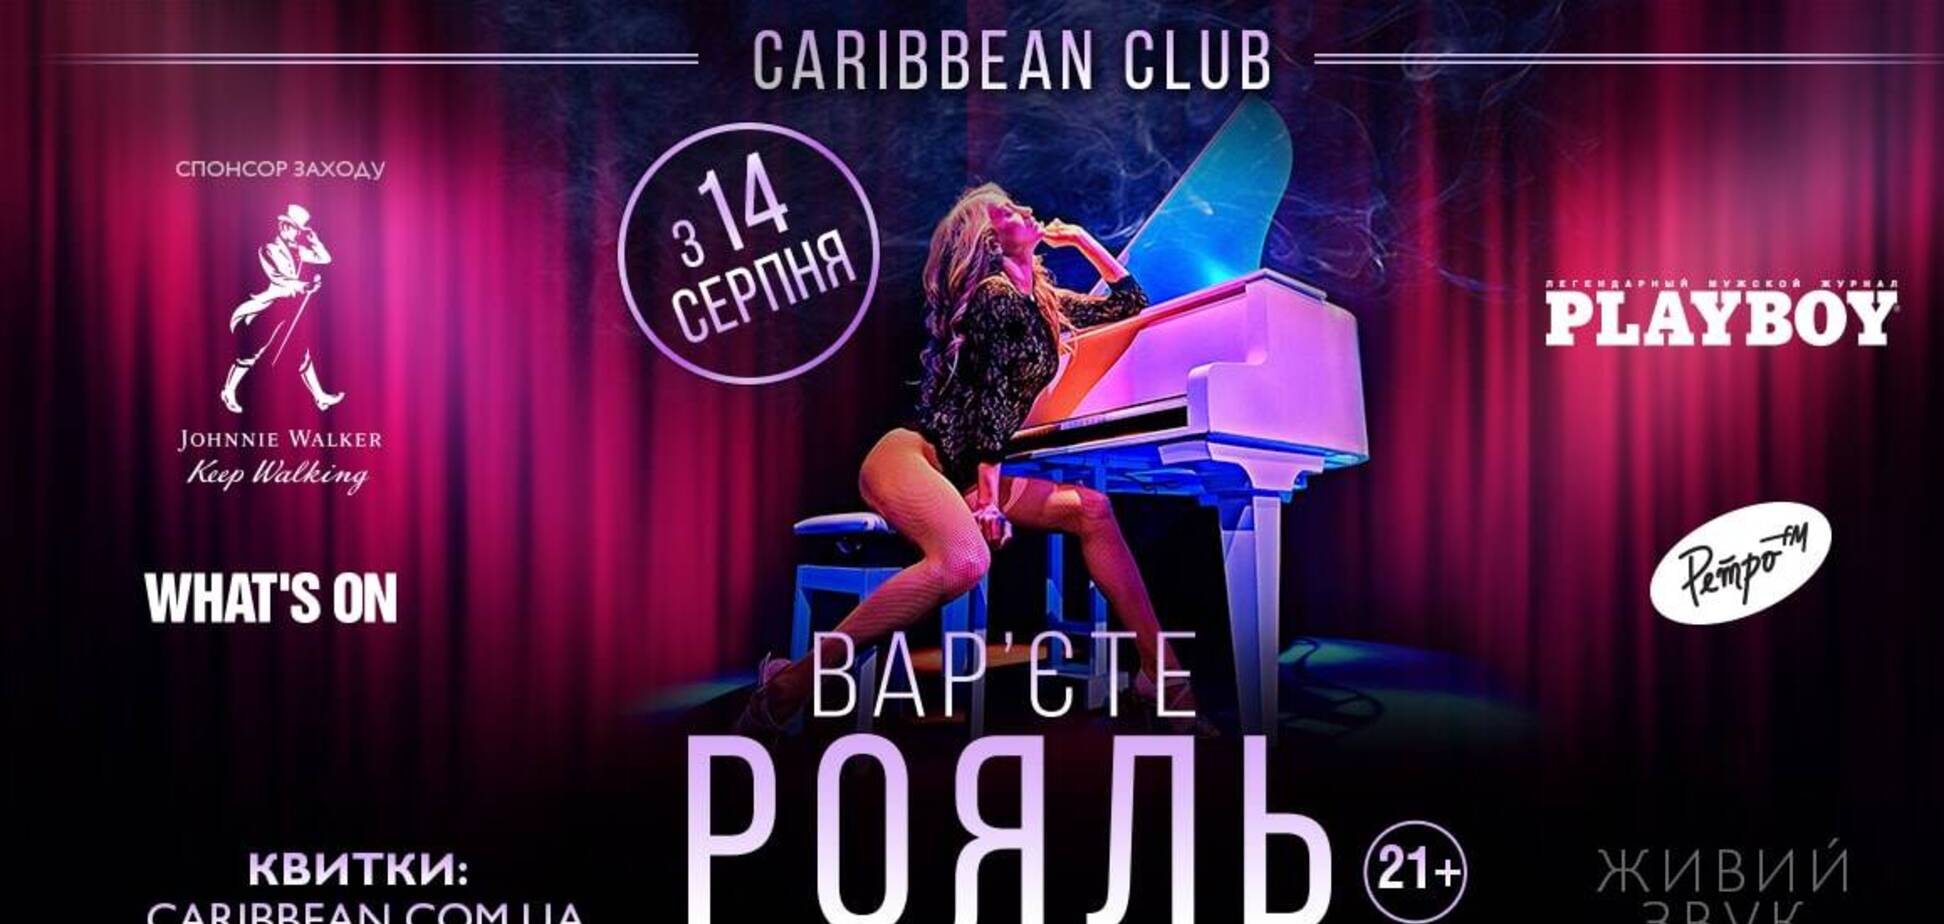 Эротическое шоу для взрослых: варьете 'Рояль' возвращается на сцену столичного Caribbean Club